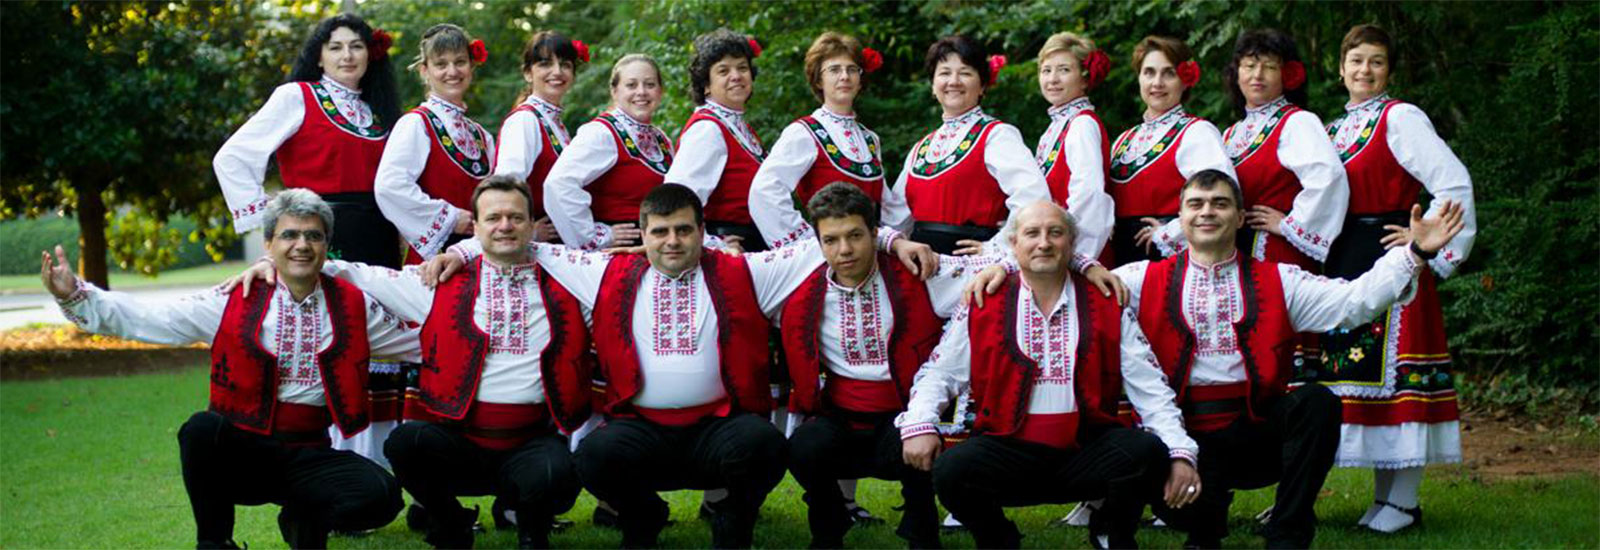 保加利亚文化节